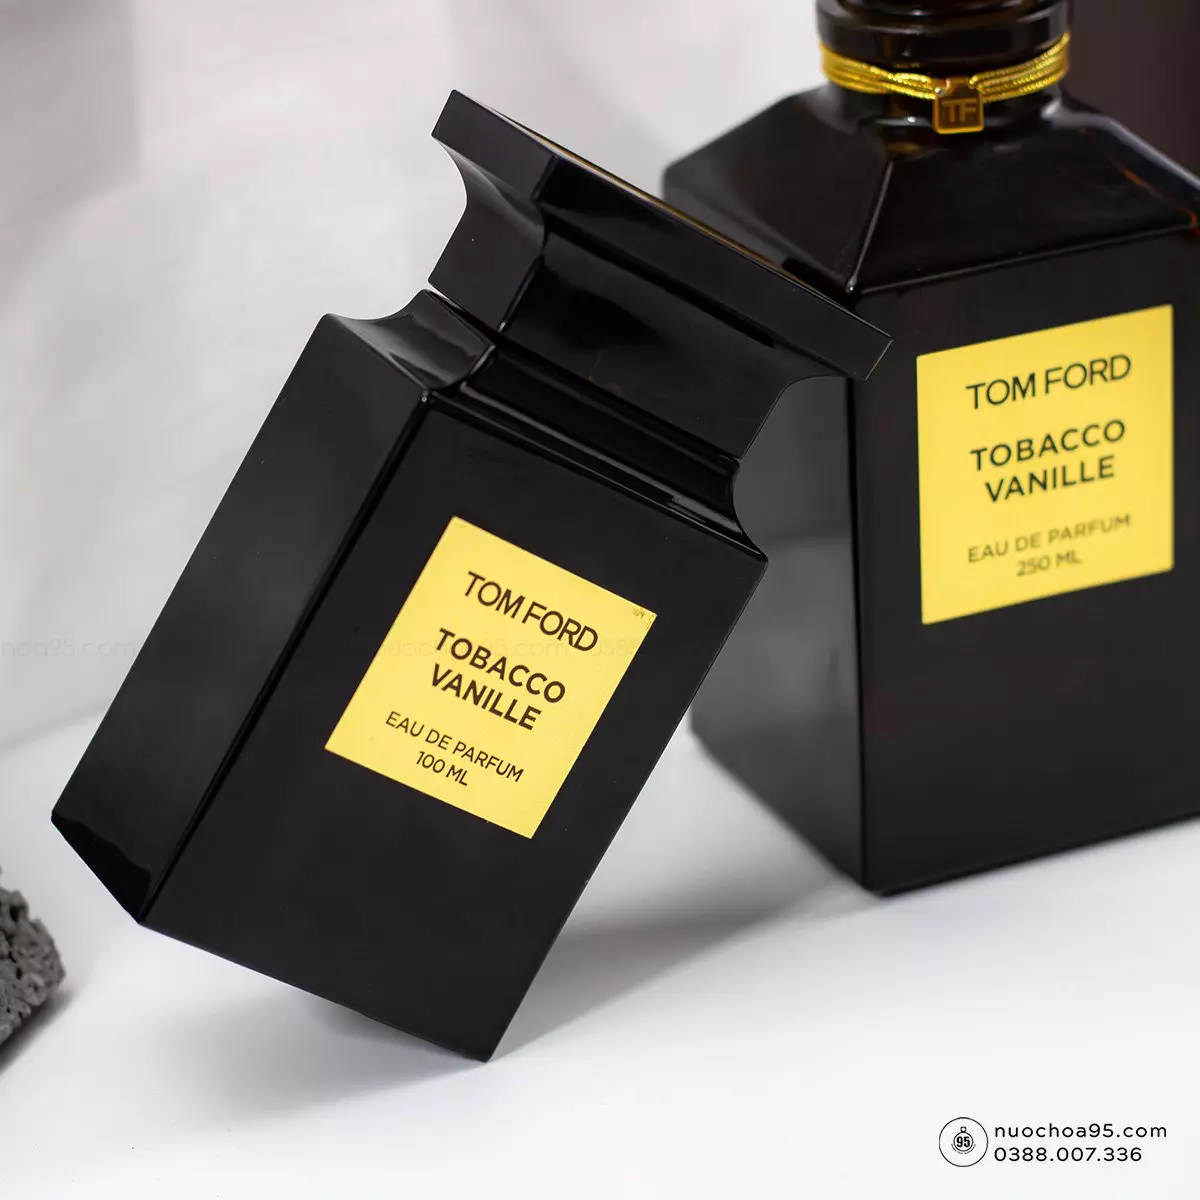 Nước hoa Tom Ford Tobacco Vanille  - Ảnh 3